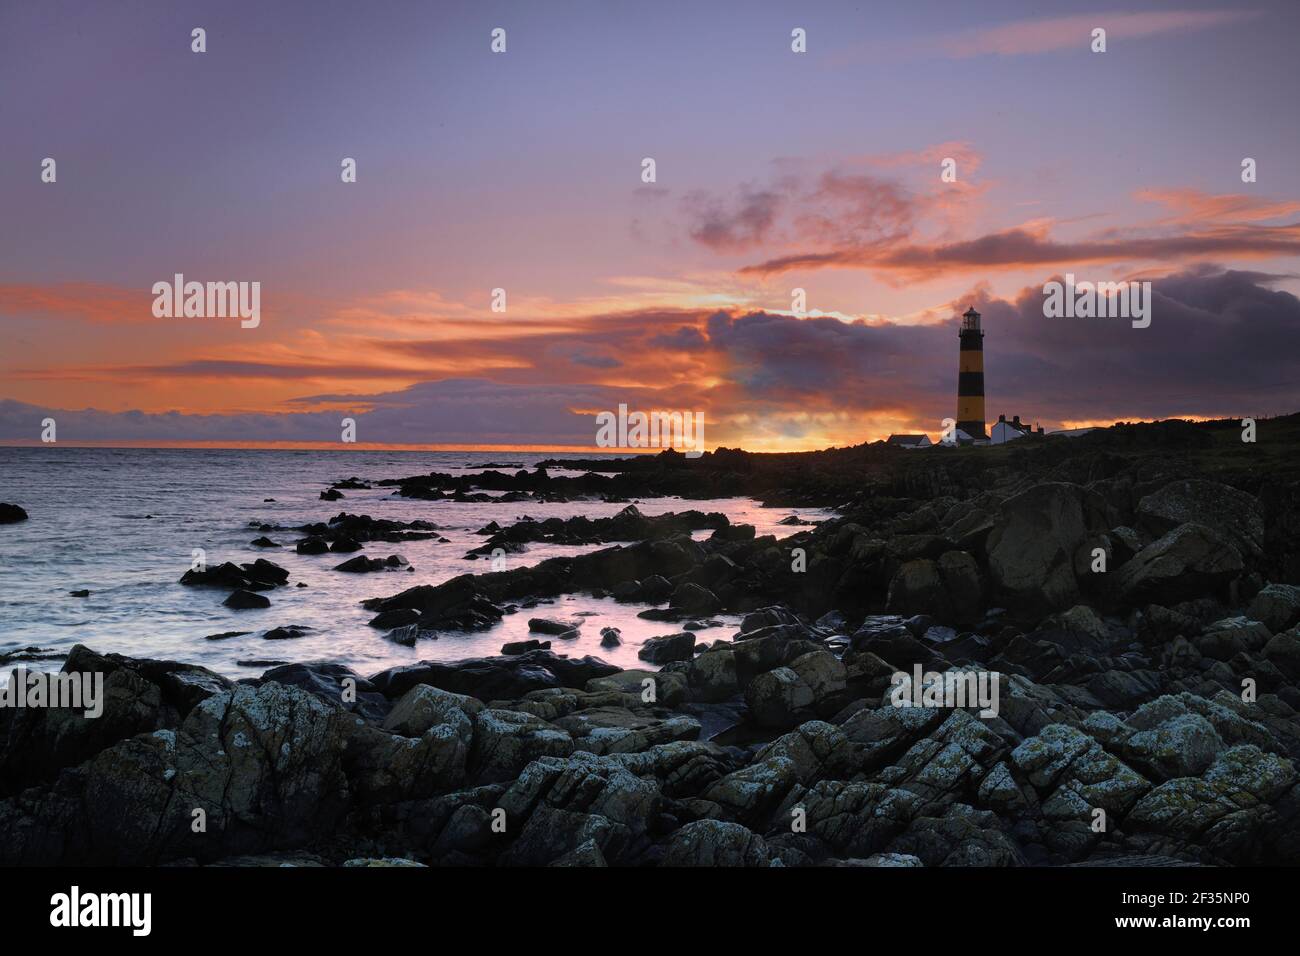 St John's Point, Northern Ireland, UK, Credit:Robert Thompson / Avalon Stock Photo